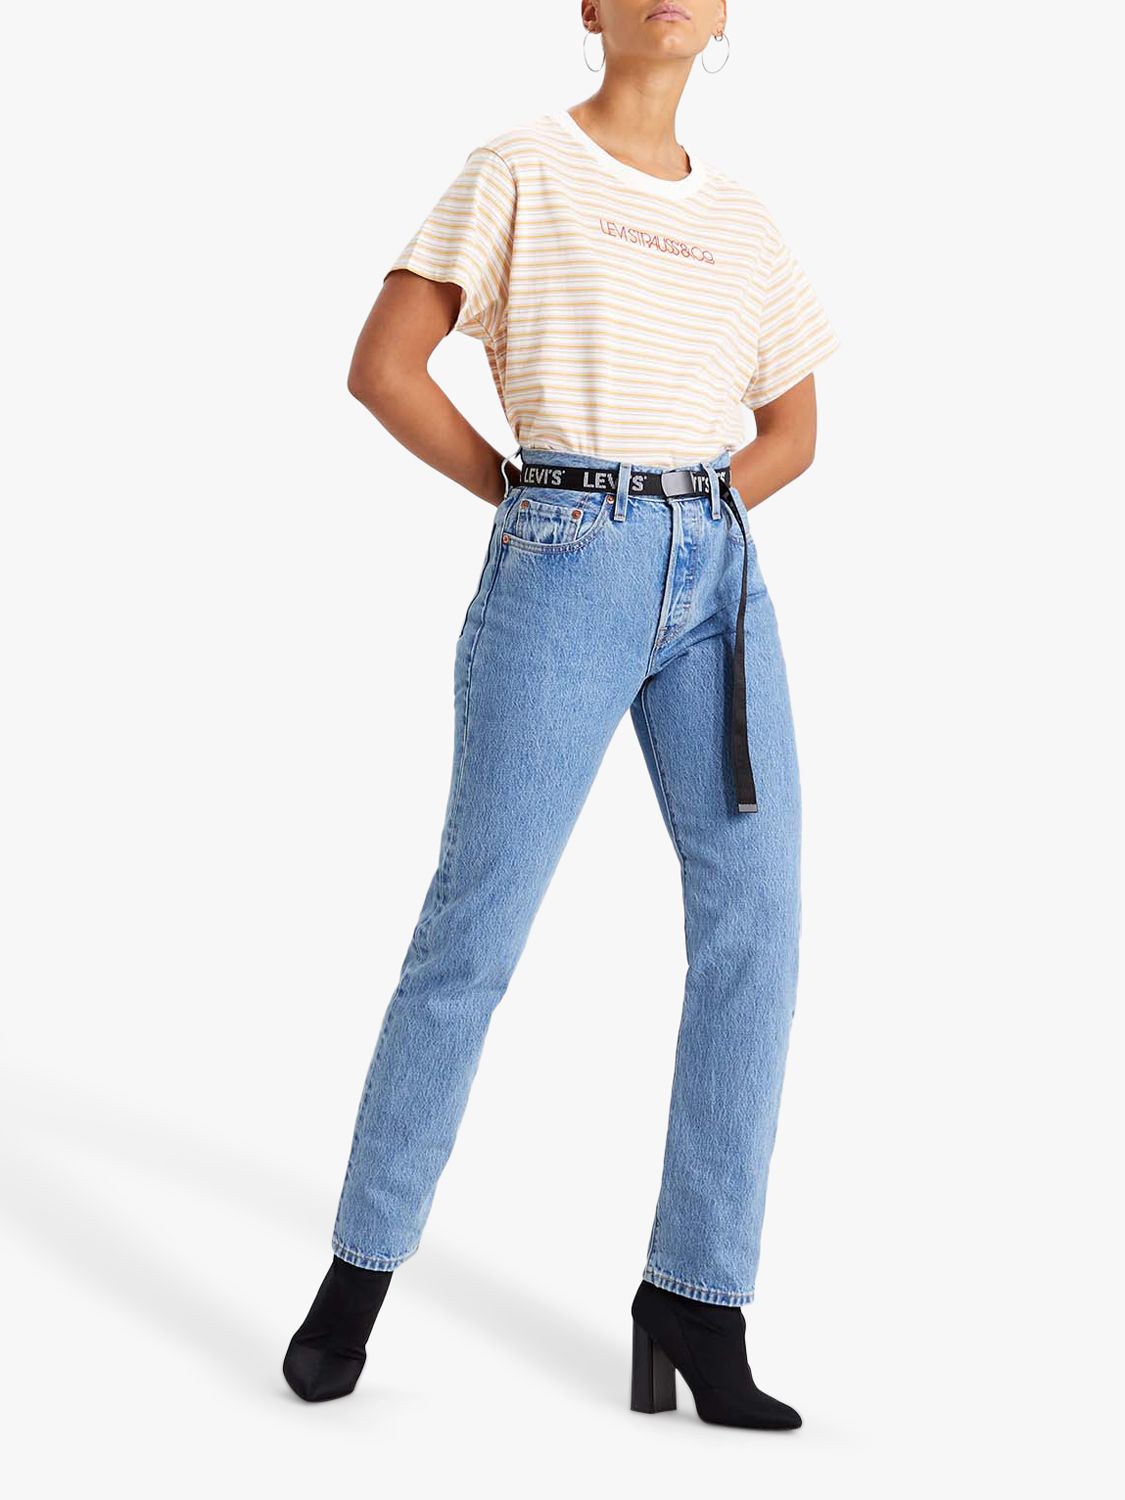 women's original 501 levi jeans